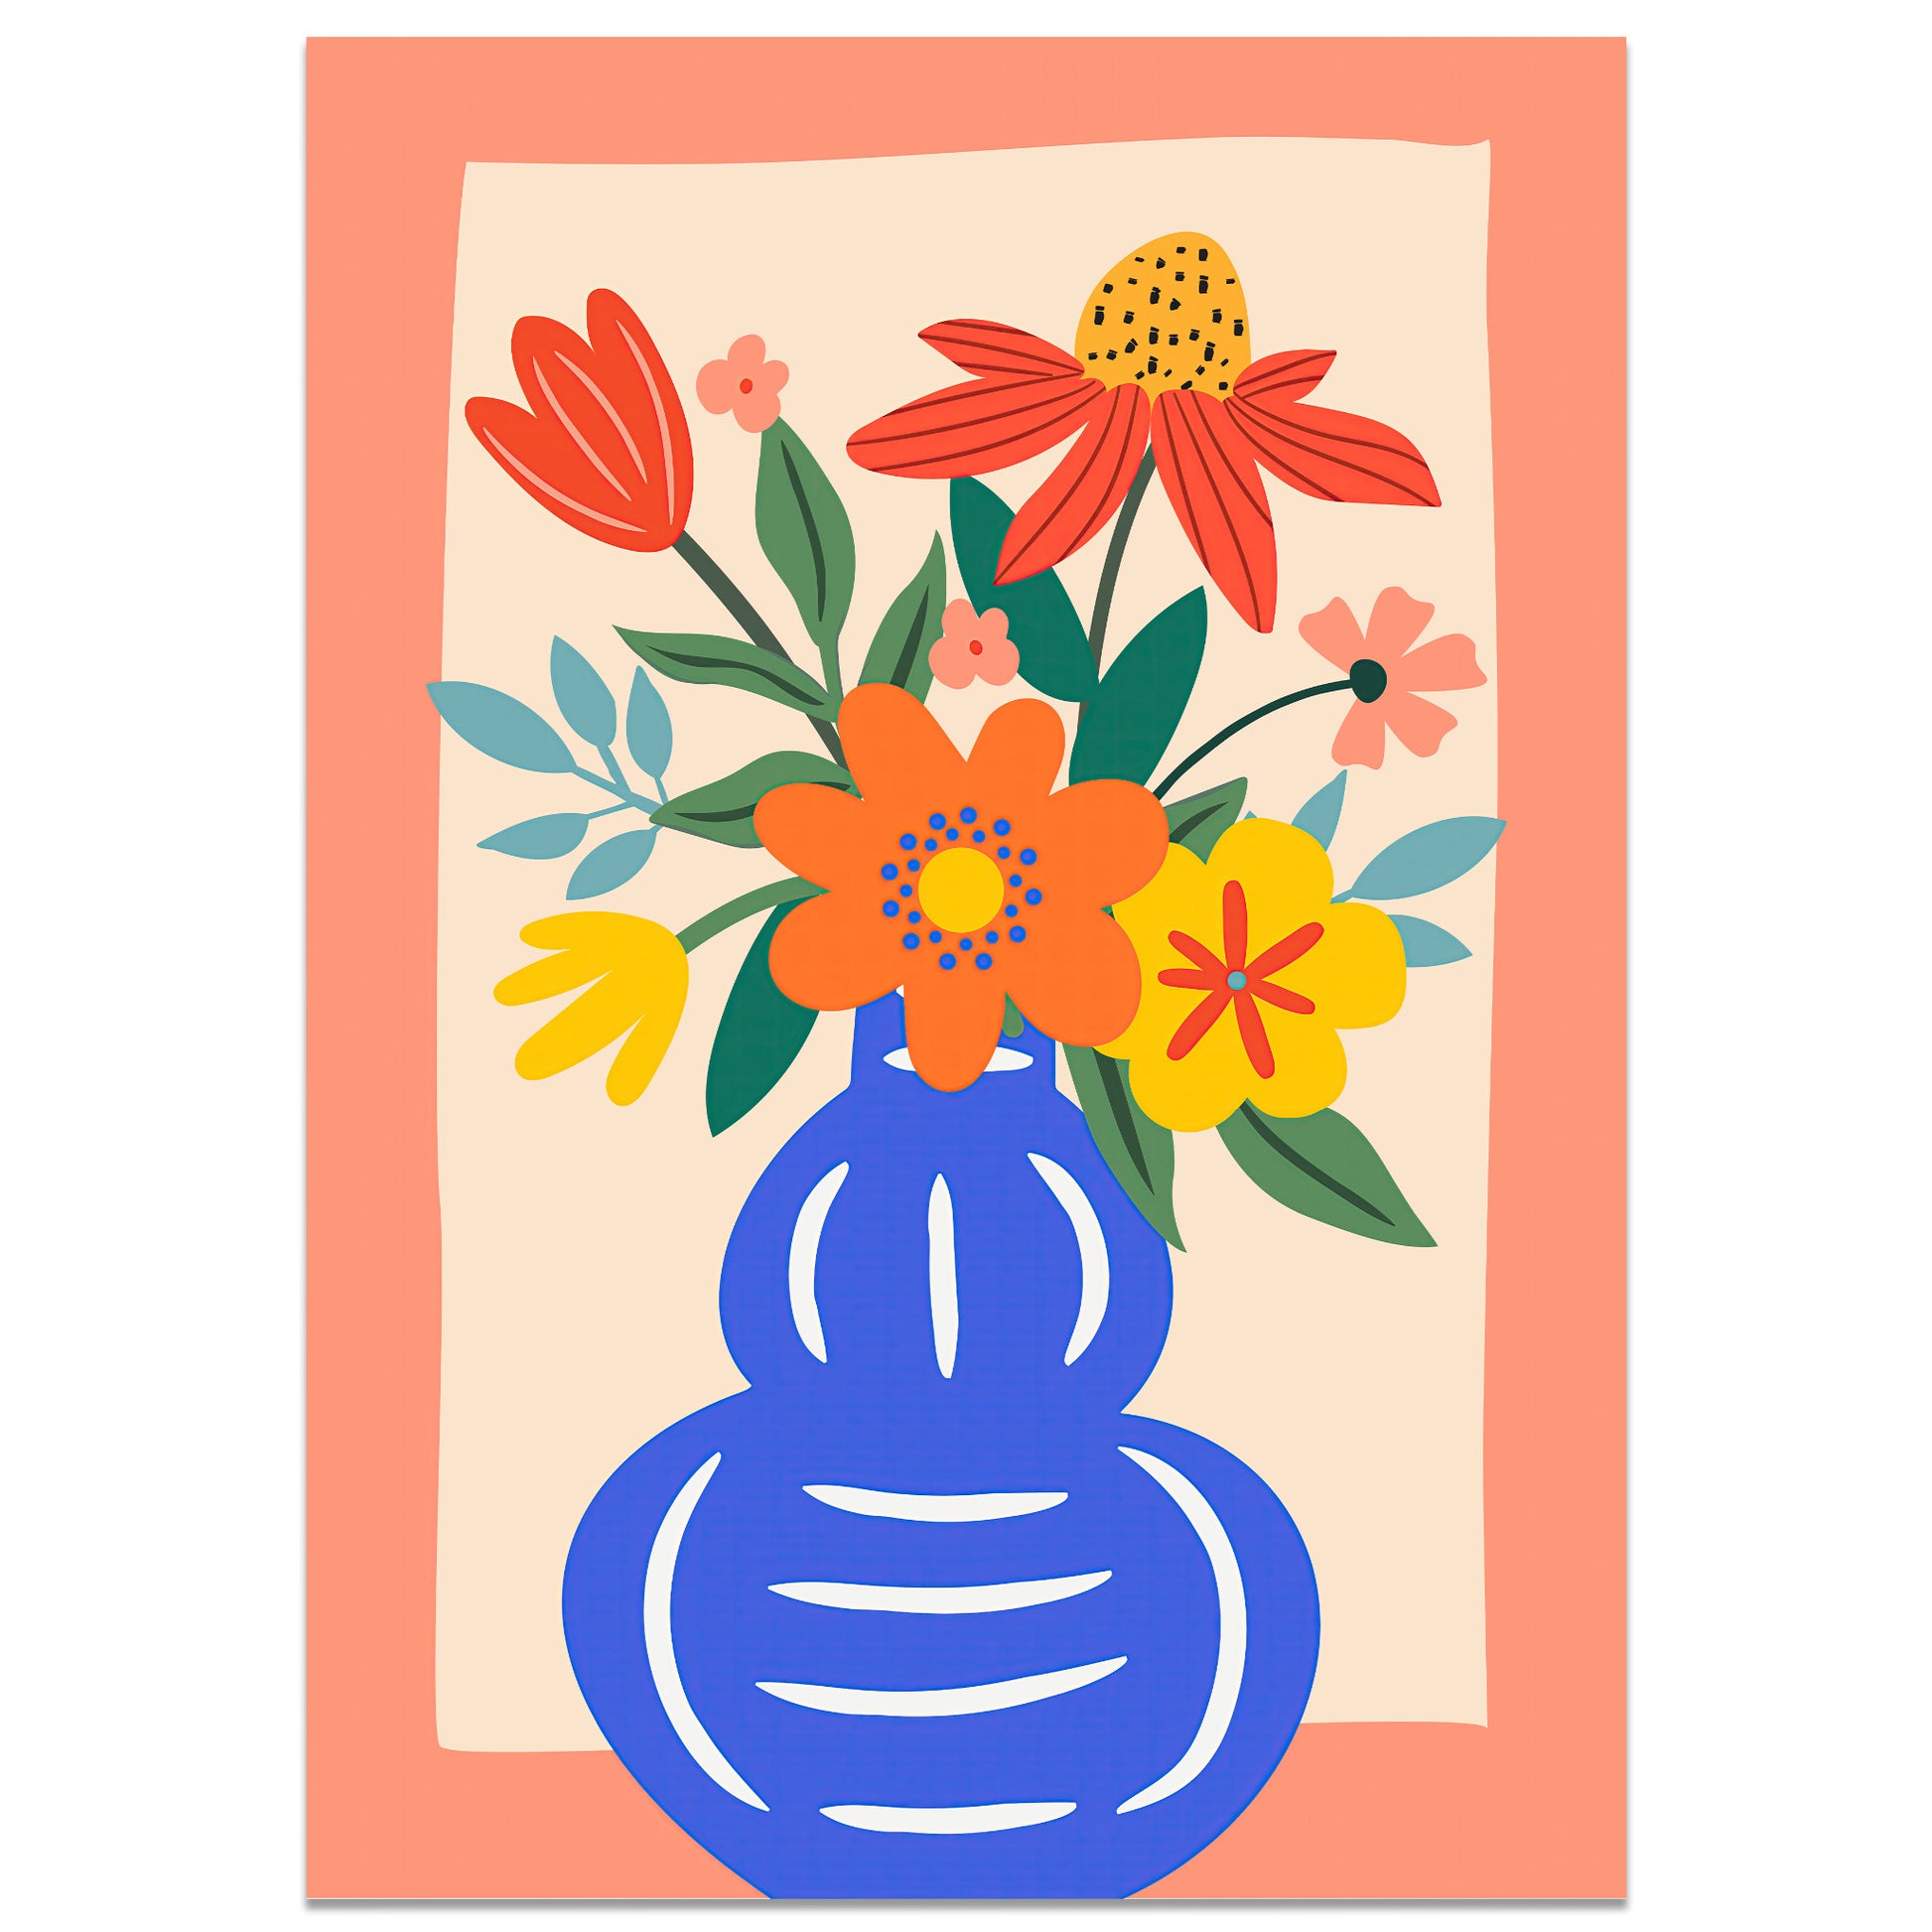 Floral bouquet in blue vase illustration